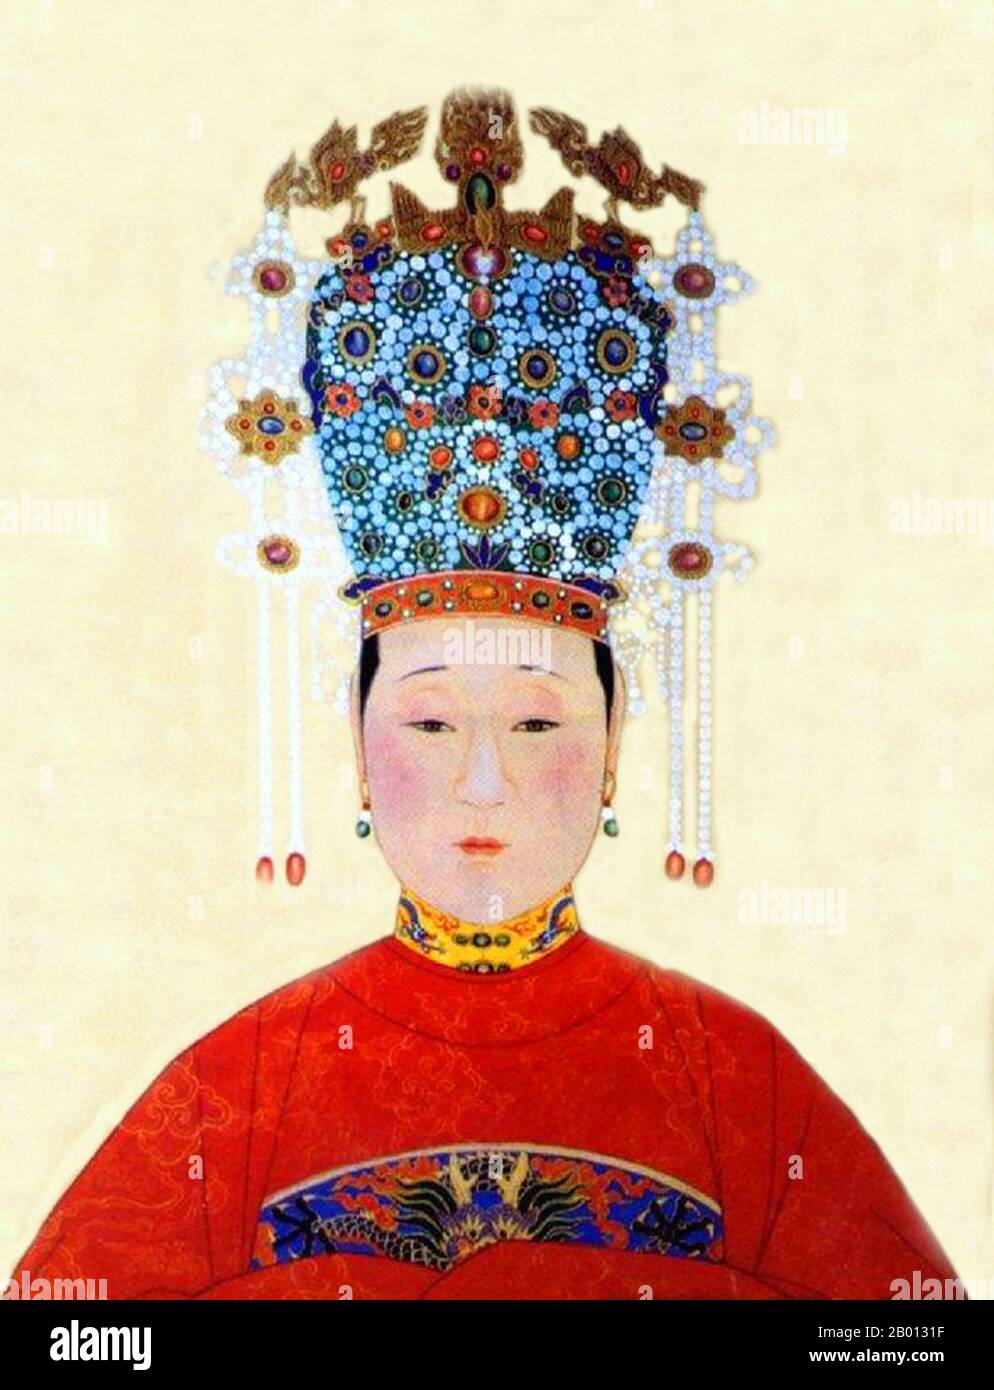 Cina: Imperatrice Xiao Jing (febbraio 27 1565 - ottobre 18 1611), consorte del 14° imperatore Ming Wanli (r. 1572-1620). Pittura a chiocciola sospesa, XVI-XVII secolo. L'imperatrice Dowager Wang (1565-1611), formalmente imperatrice Xiaojing ma principalmente conosciuta come Consort Gong, era la madre dell'imperatore Taichang. Inizialmente una cameriera dell'imperatrice Dowager Xiaoding, catturò l'occhio dell'Imperatore Wanli. L'imperatore la ignorò quando divenne incinta, ed era solo per volere dell'imperatrice Dowager che si relentò e si sposò con lei. Suo nipote, l'imperatore Tianqi, la promosse all'imperatrice Dowager. Foto Stock